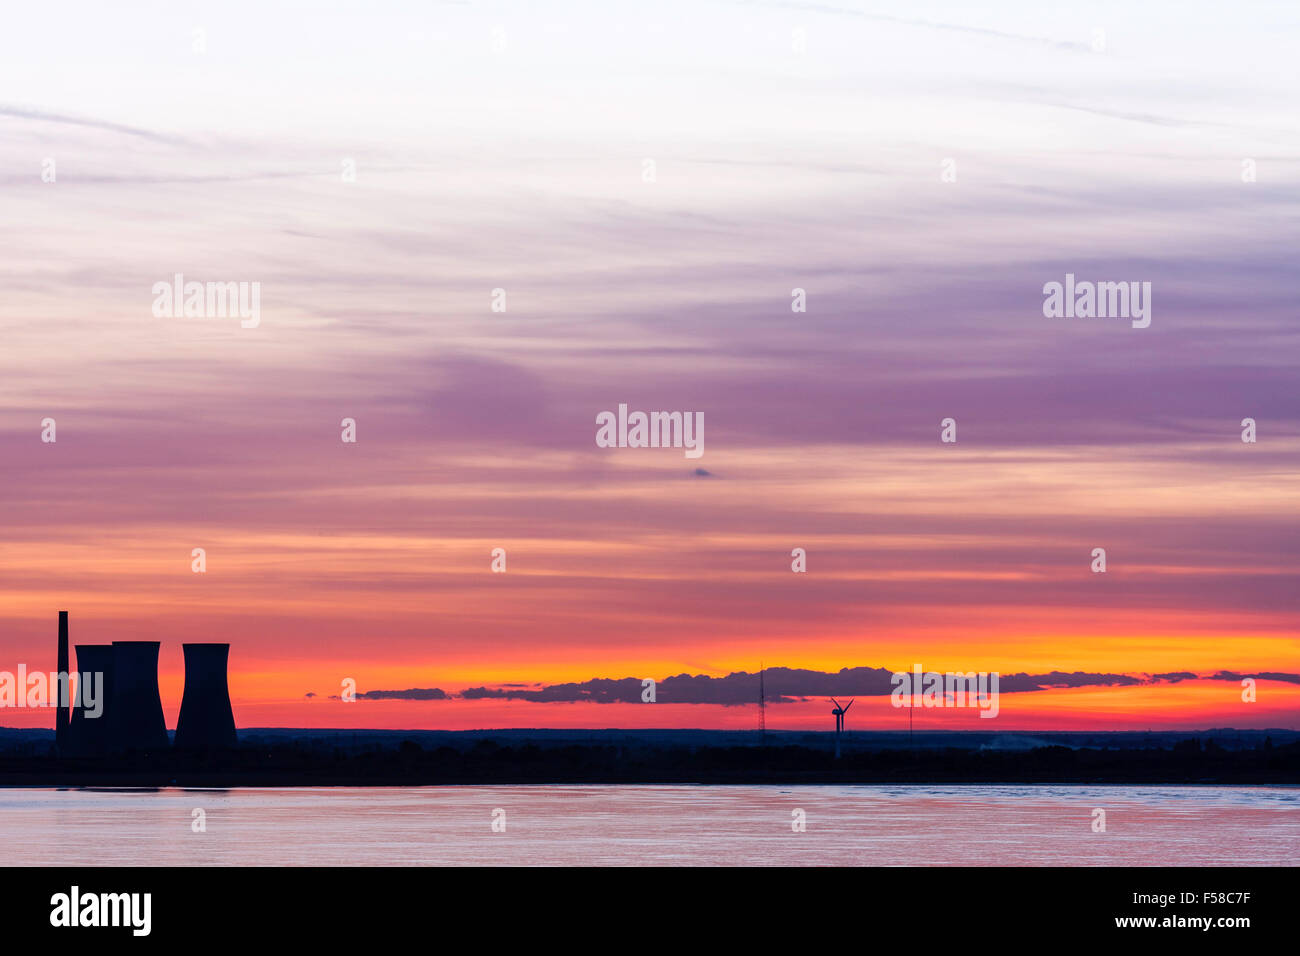 Himmel über Pegwell Bay in Ramsgate an der Küste von Kent kurz nach Sonnenuntergang. Kühltürme von Richborough Power Station gegen den Himmel. Stockfoto